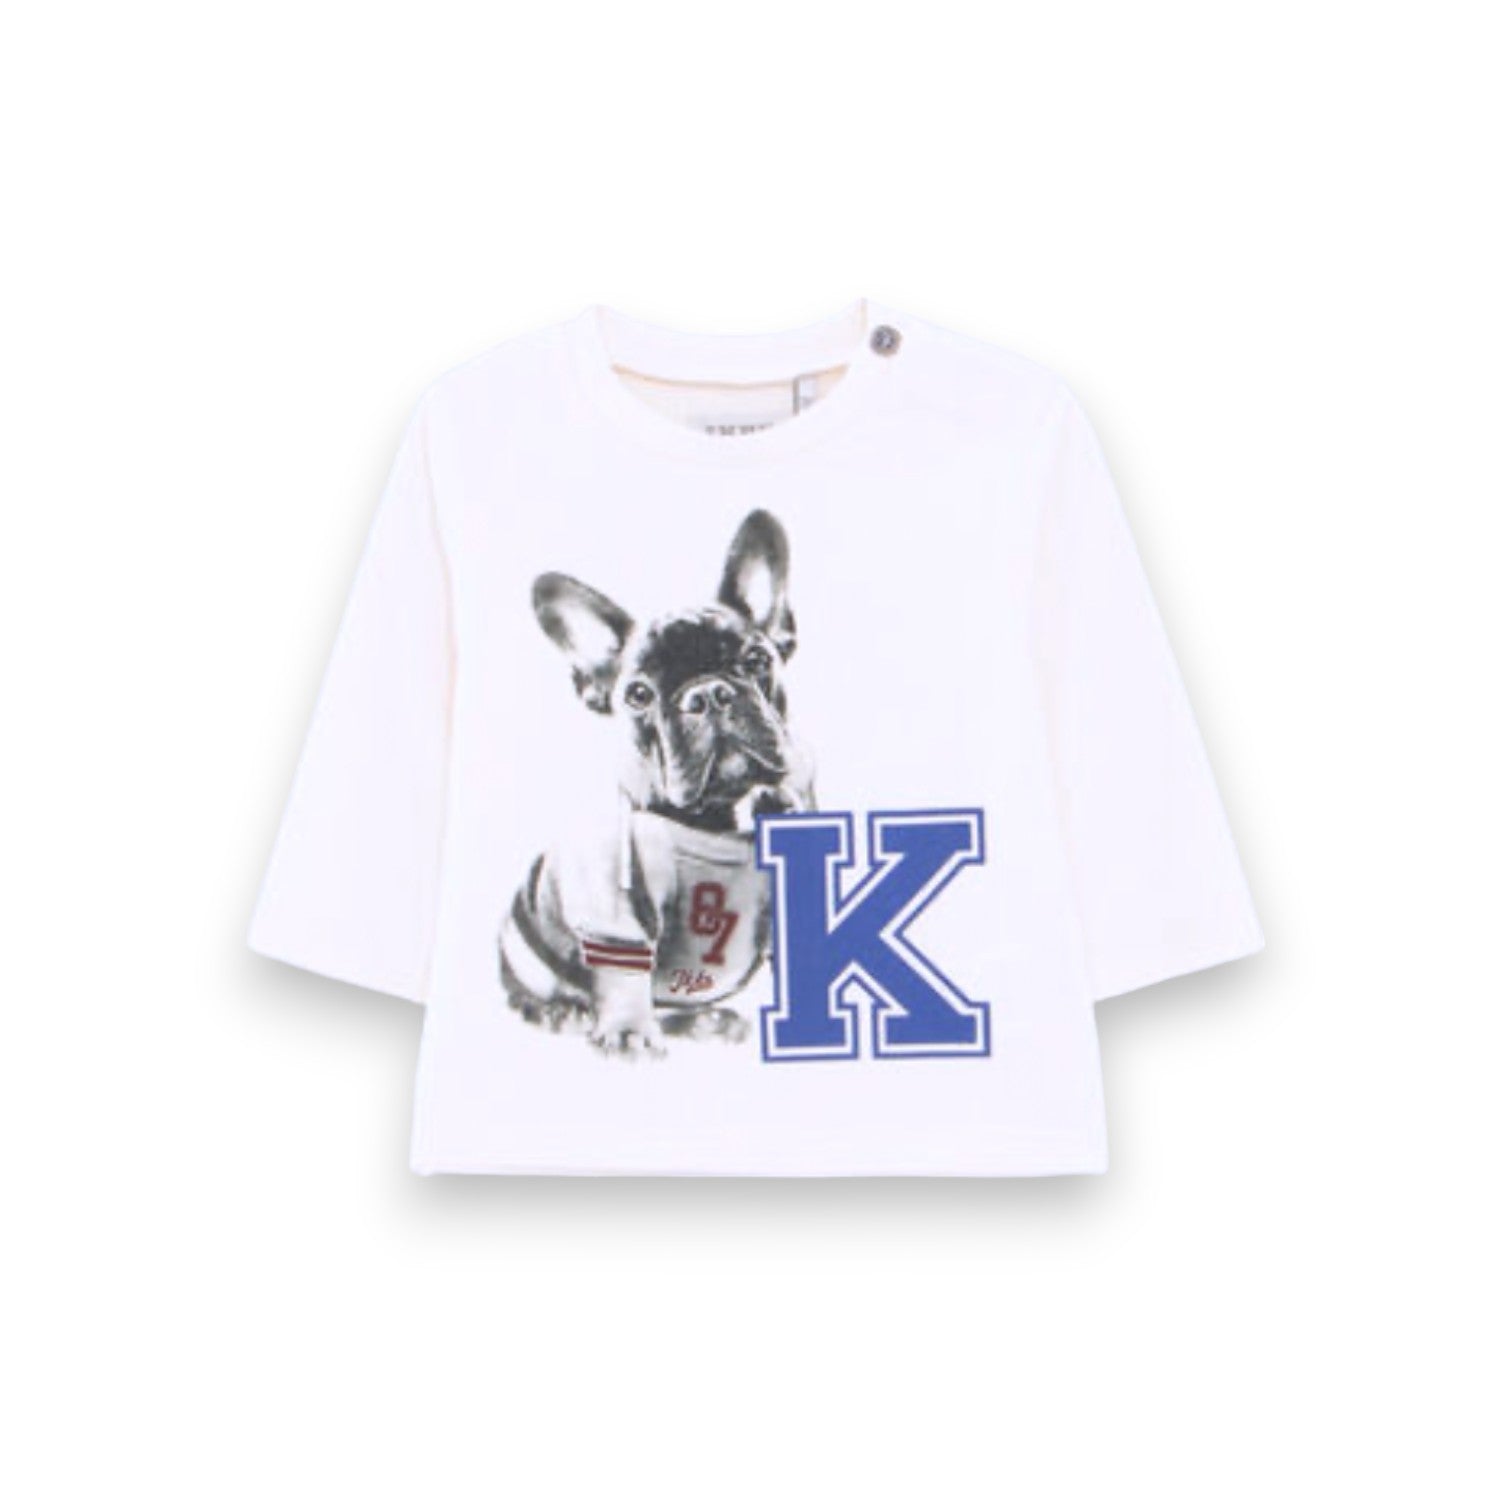 IKKS - T shirt écru motif chien baseball (neuf) - 18 mois